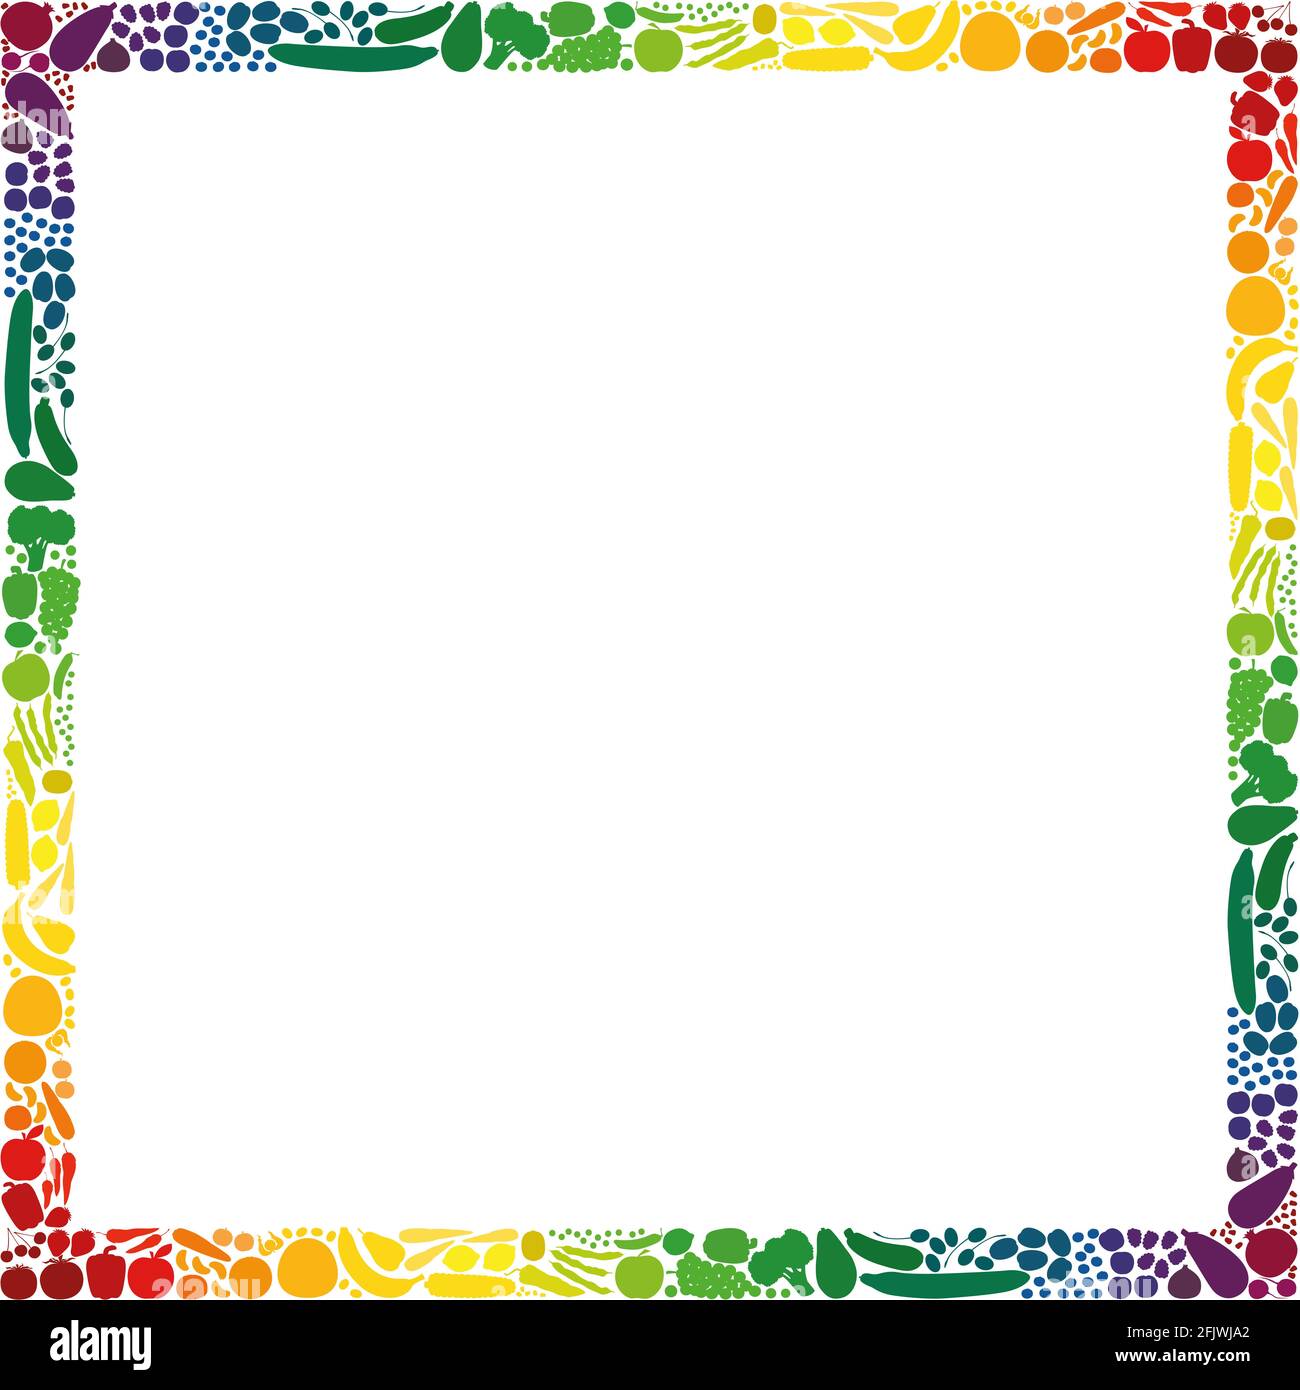 Fruits et légumes, cadre carré, collection de couleurs en dégradé arc-en-ciel - illustration sur fond blanc. Banque D'Images